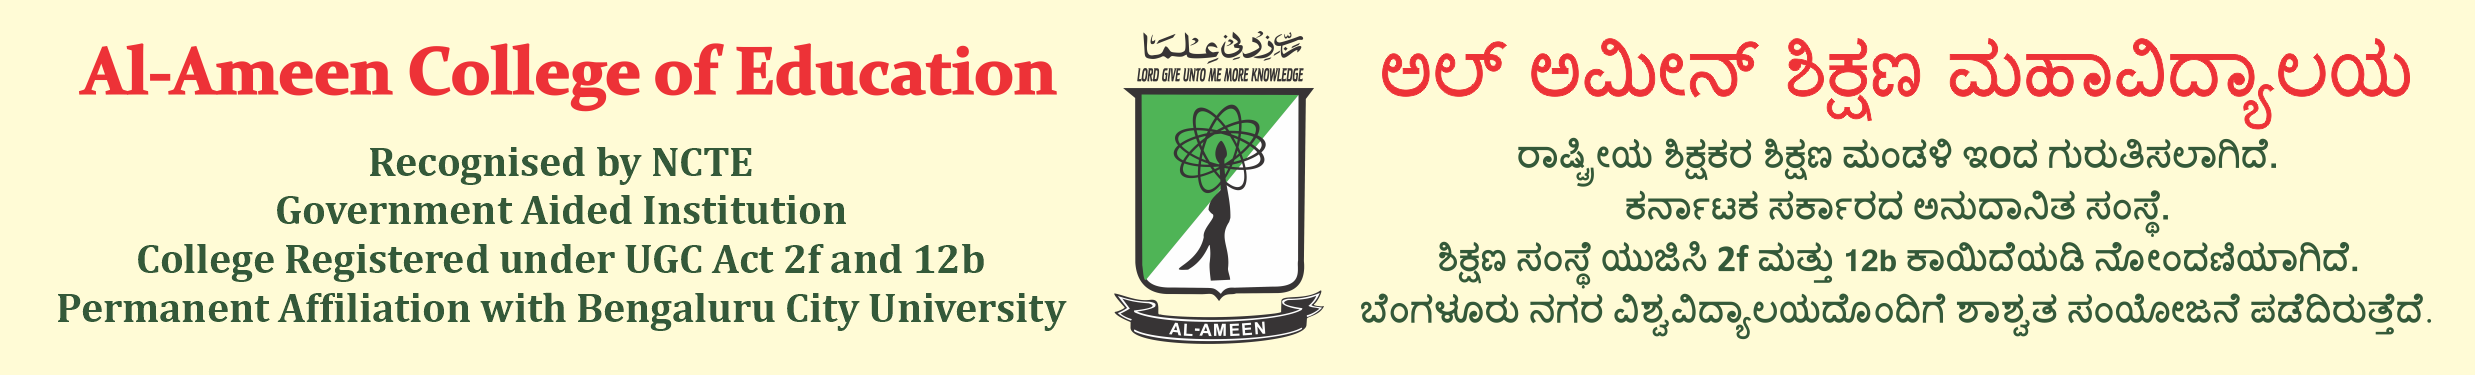 Al-Ameen College website Banner